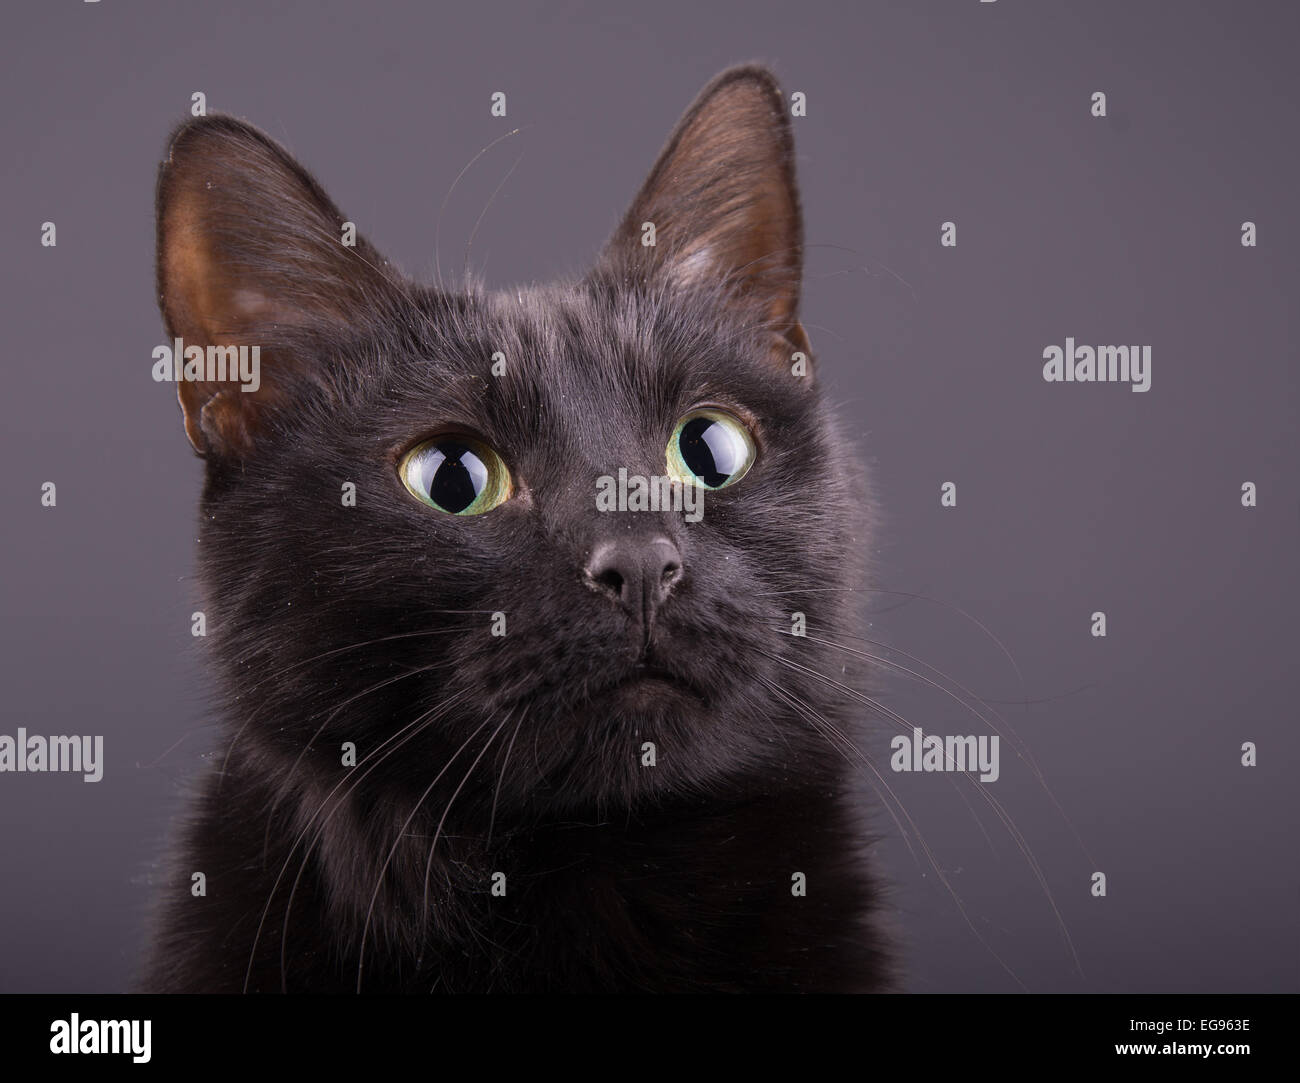 Libre d'une adorable chat noir contre fond gris foncé Banque D'Images